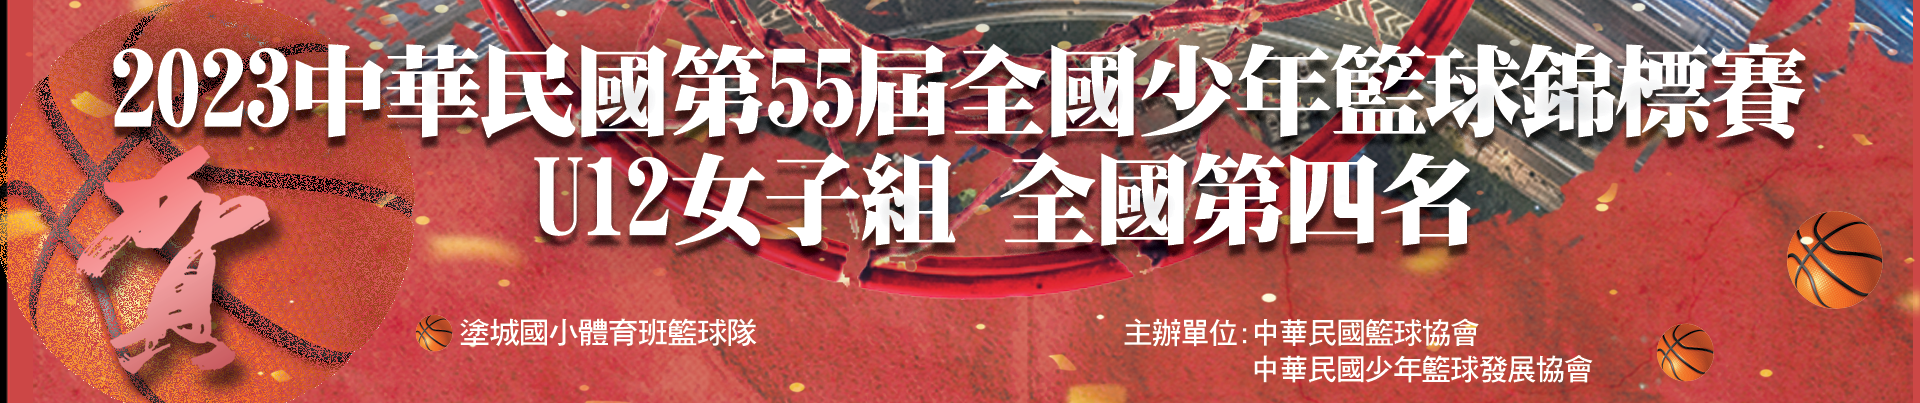 2023中華民國第55屆全國少年籃球錦標賽